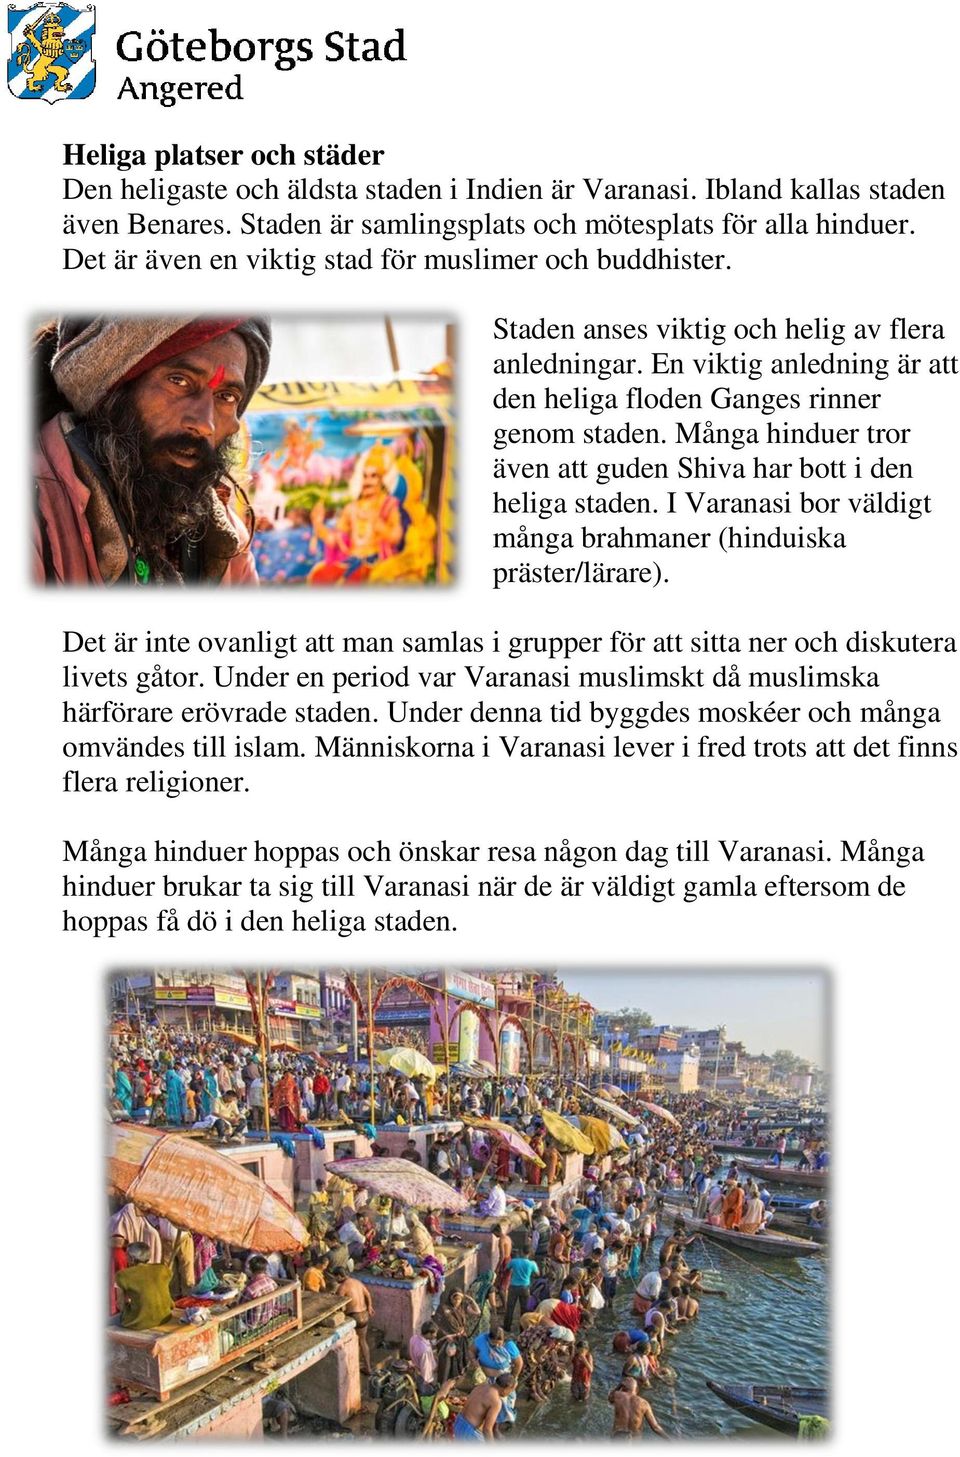 Många hinduer tror även att guden Shiva har bott i den heliga staden. I Varanasi bor väldigt många brahmaner (hinduiska präster/lärare).